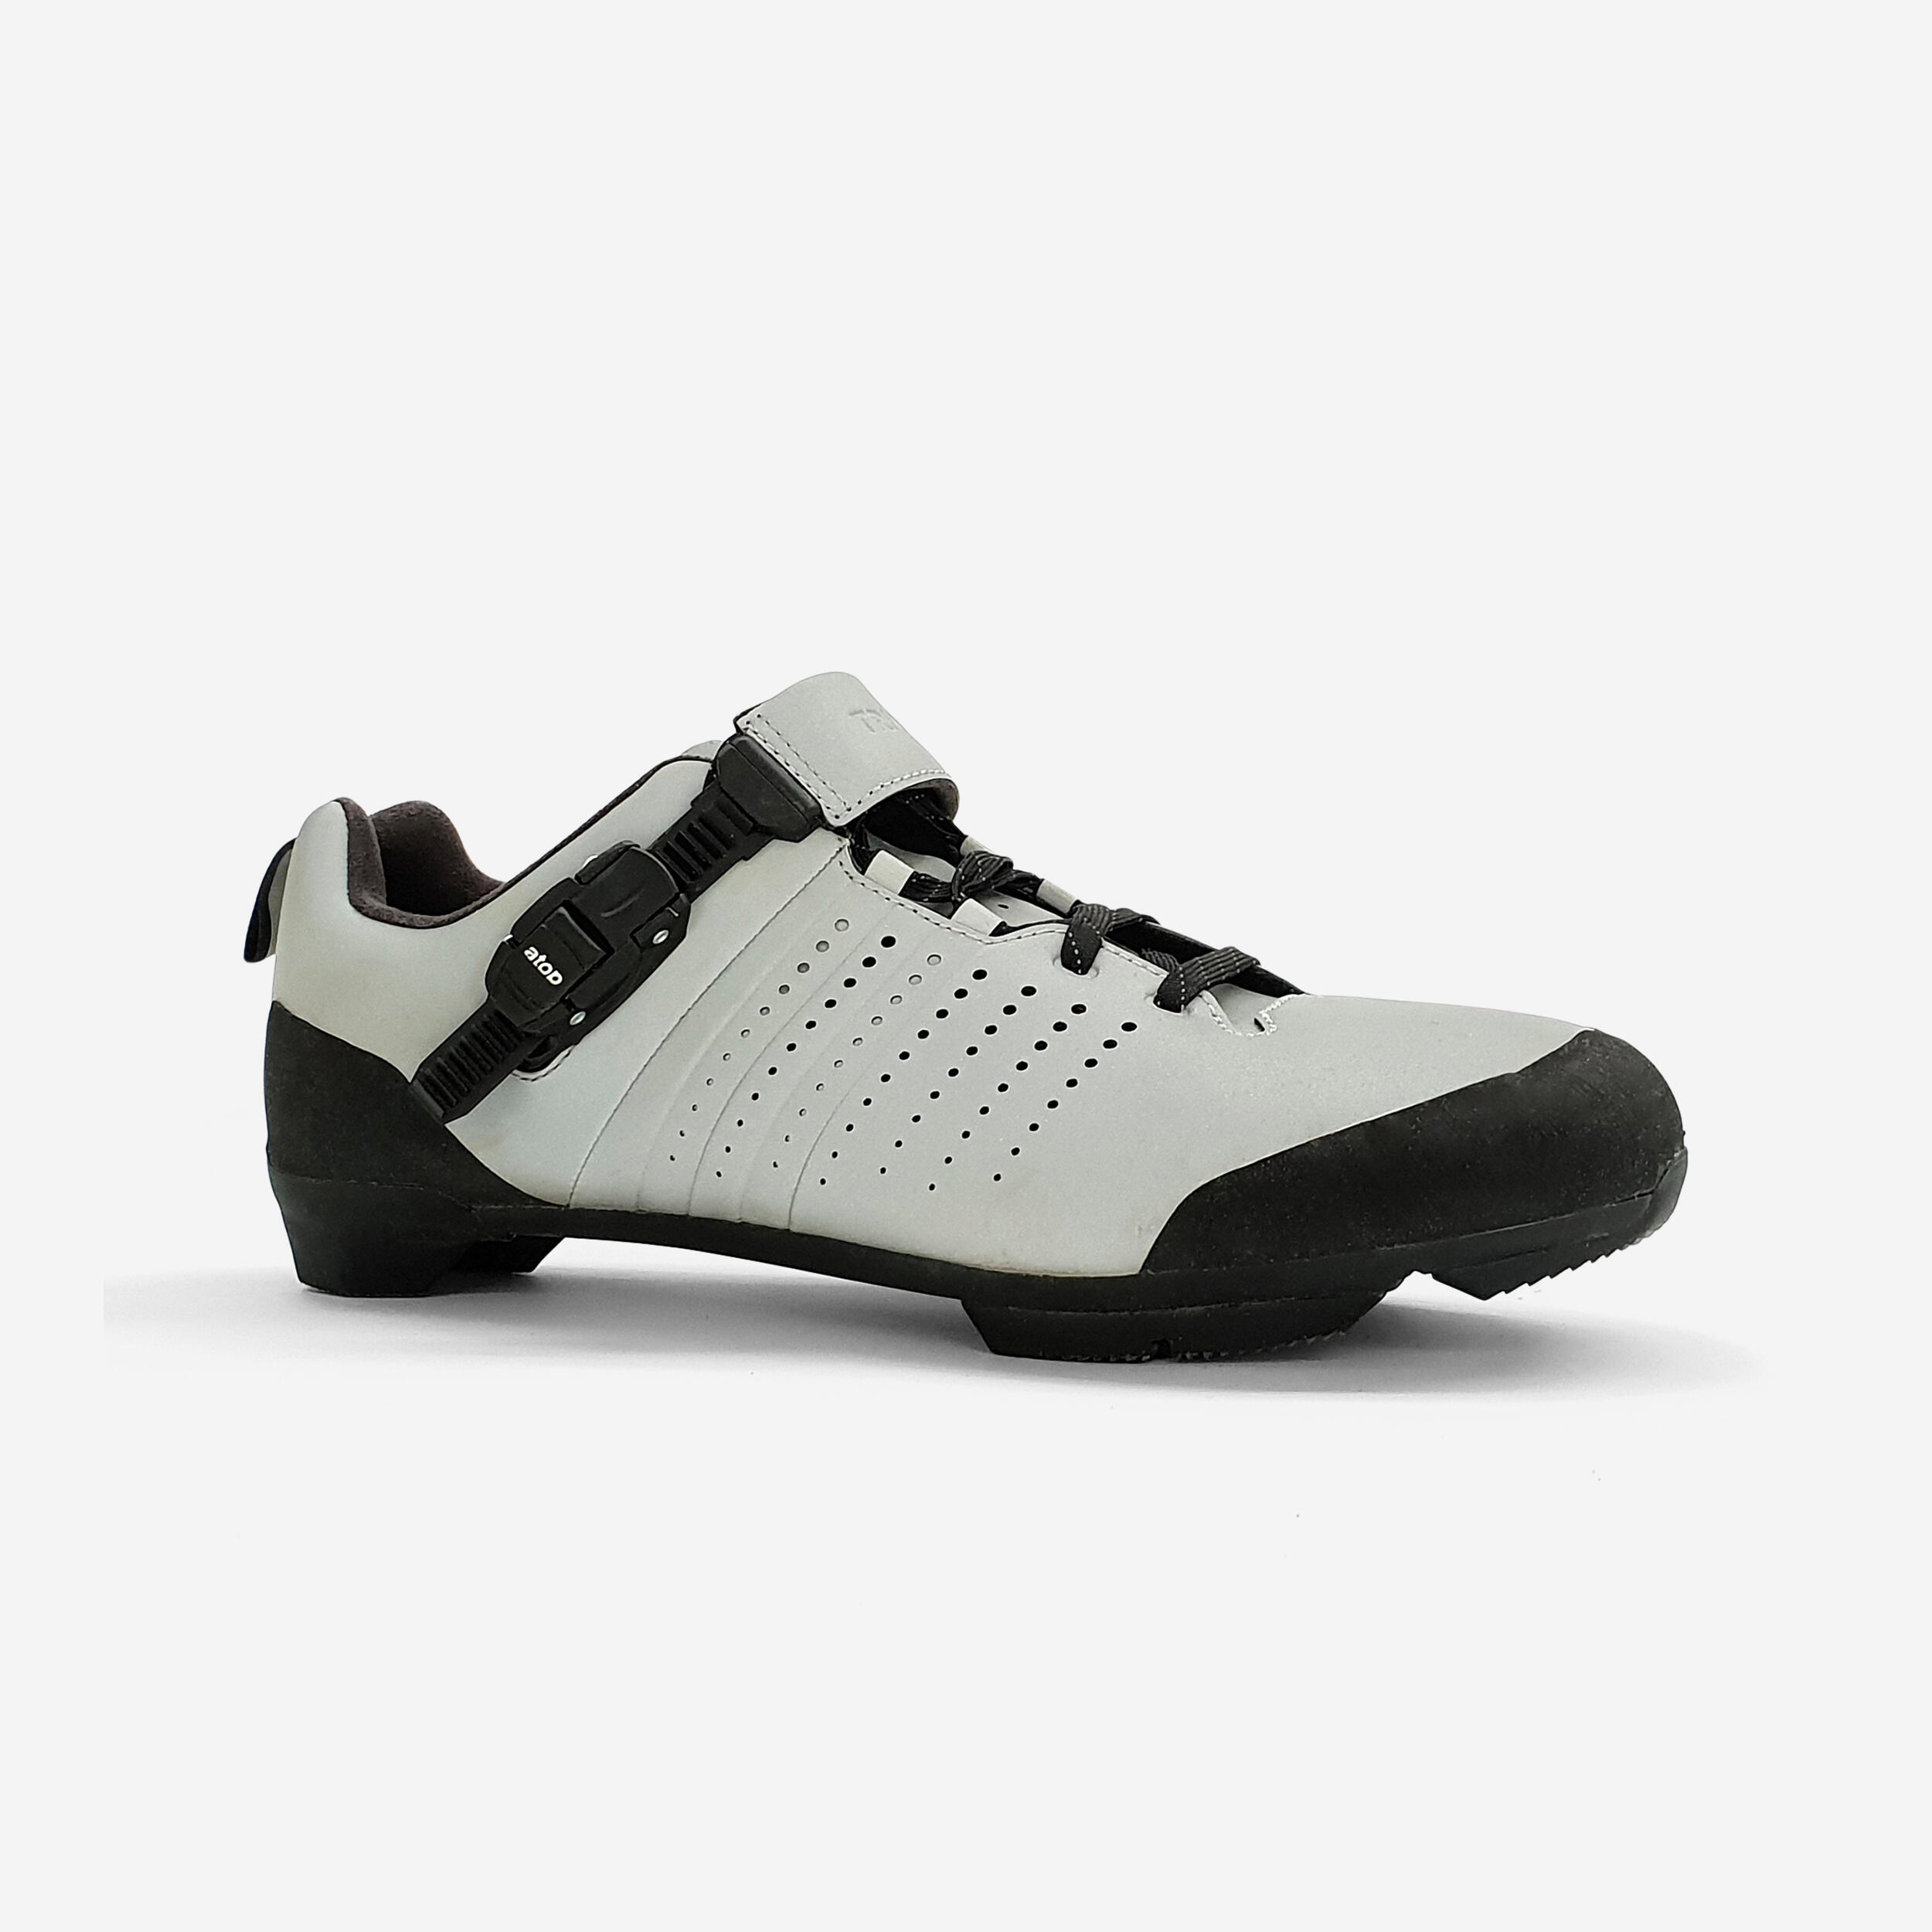 Zapatillas Para Decathlon Sale Online - deportesinc.com 1688435598